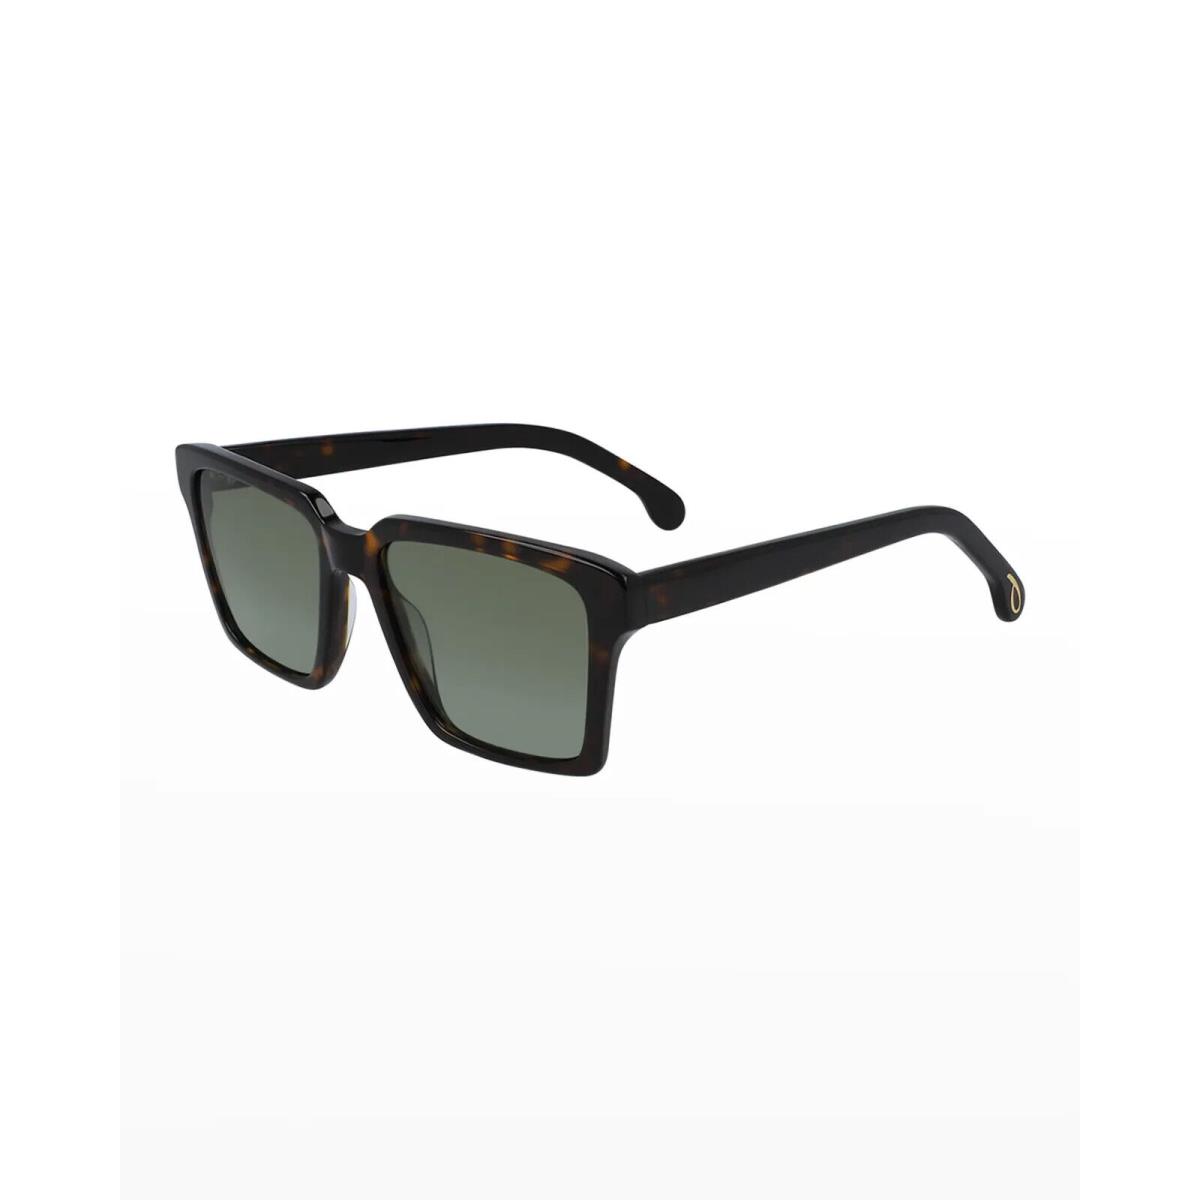 Paul Smith Sunglasses Austin 4 Colors Retail 53-18-145 Deep Tortoise